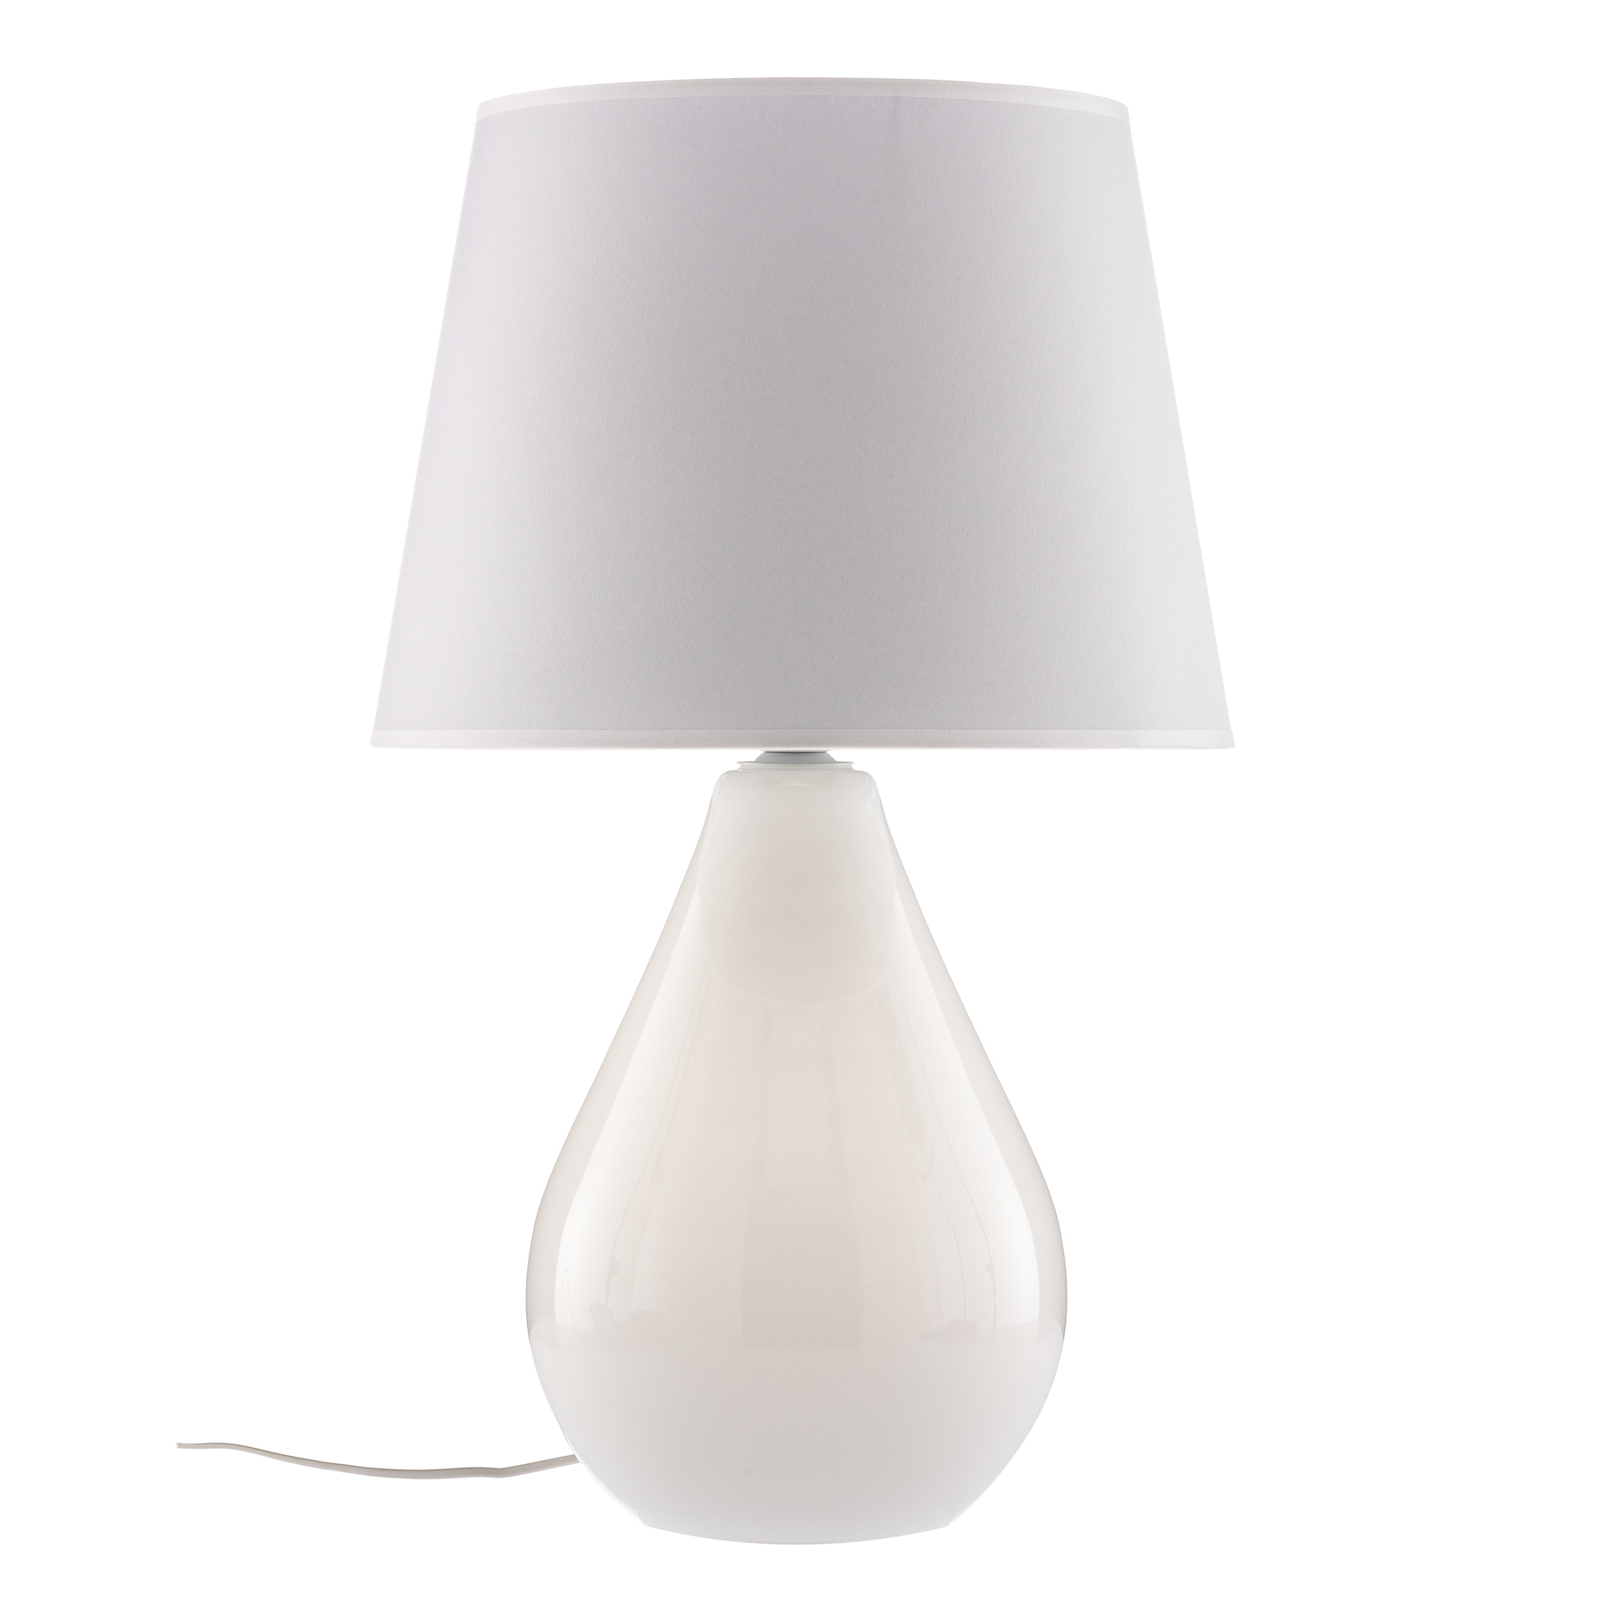 Lacrima table lamp, white/silver